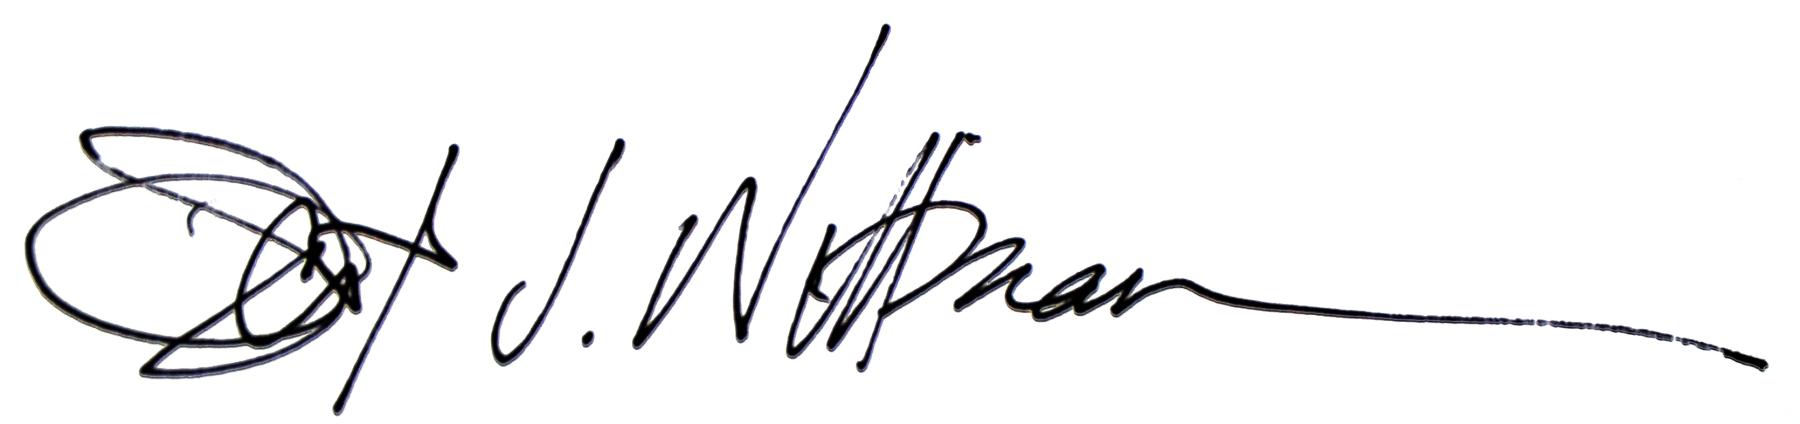 Wittman_Signature.jpg